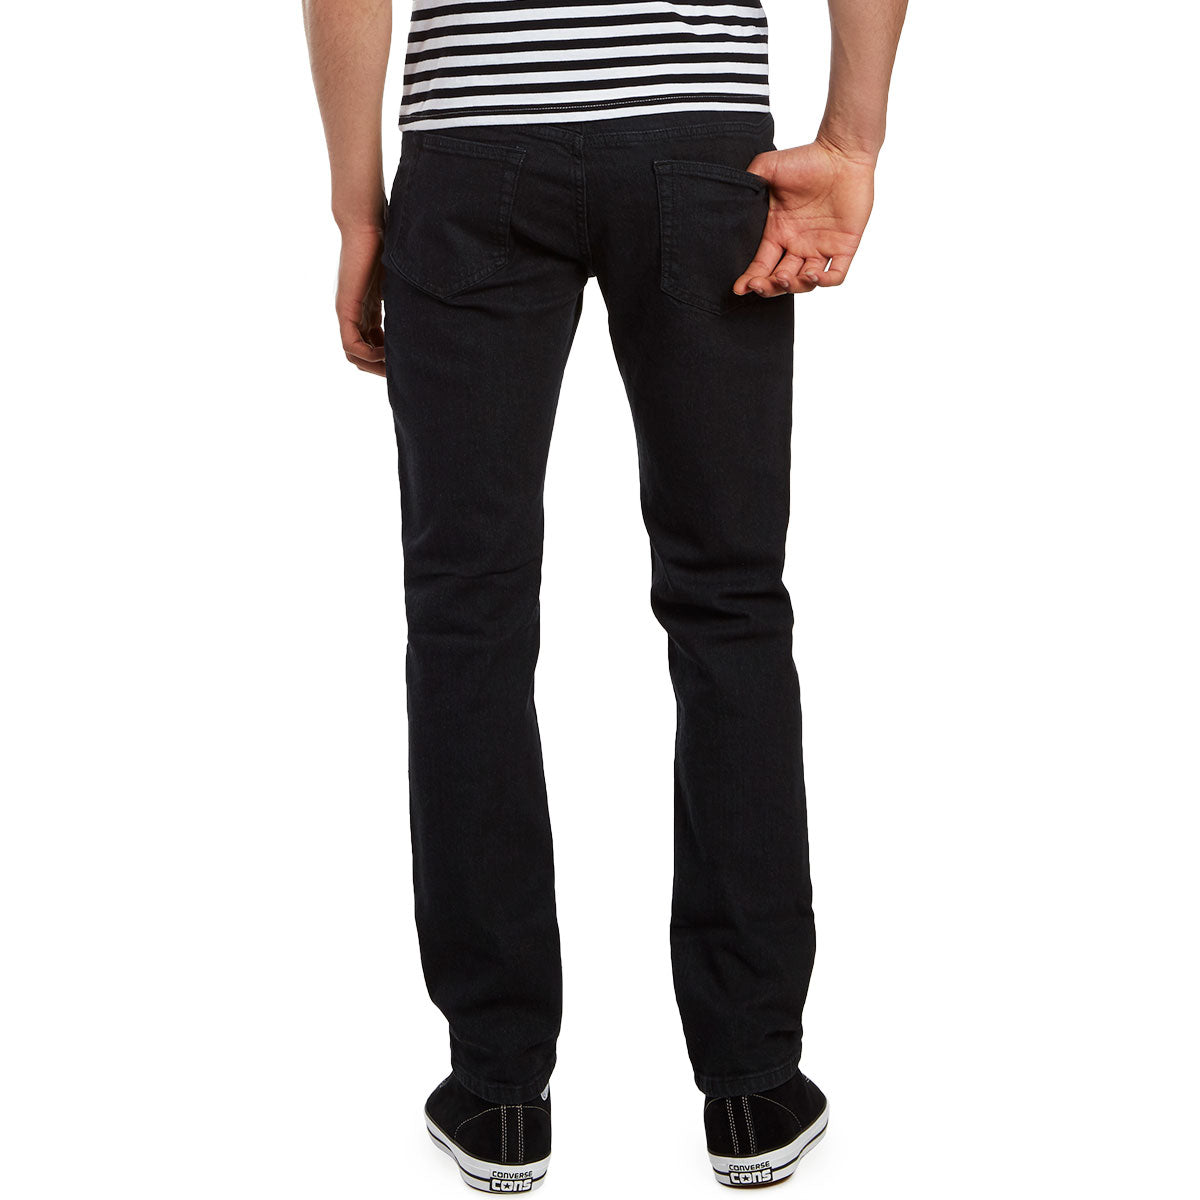 CCS Slim Fit Jeans - Washed Black image 3